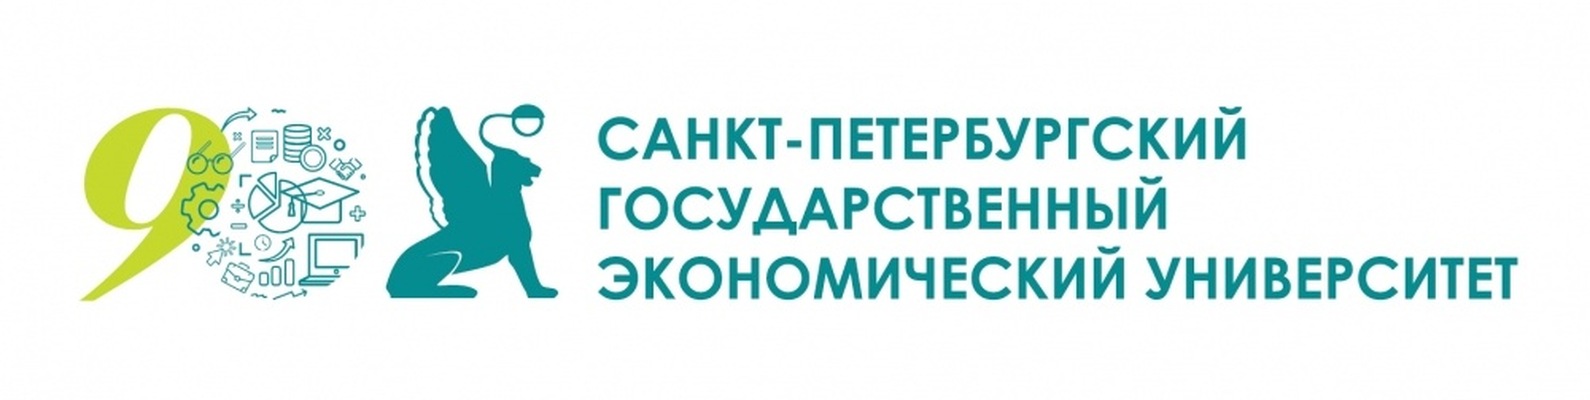 Логотип (Санкт-Петербургский государственный торгово-экономический университет)